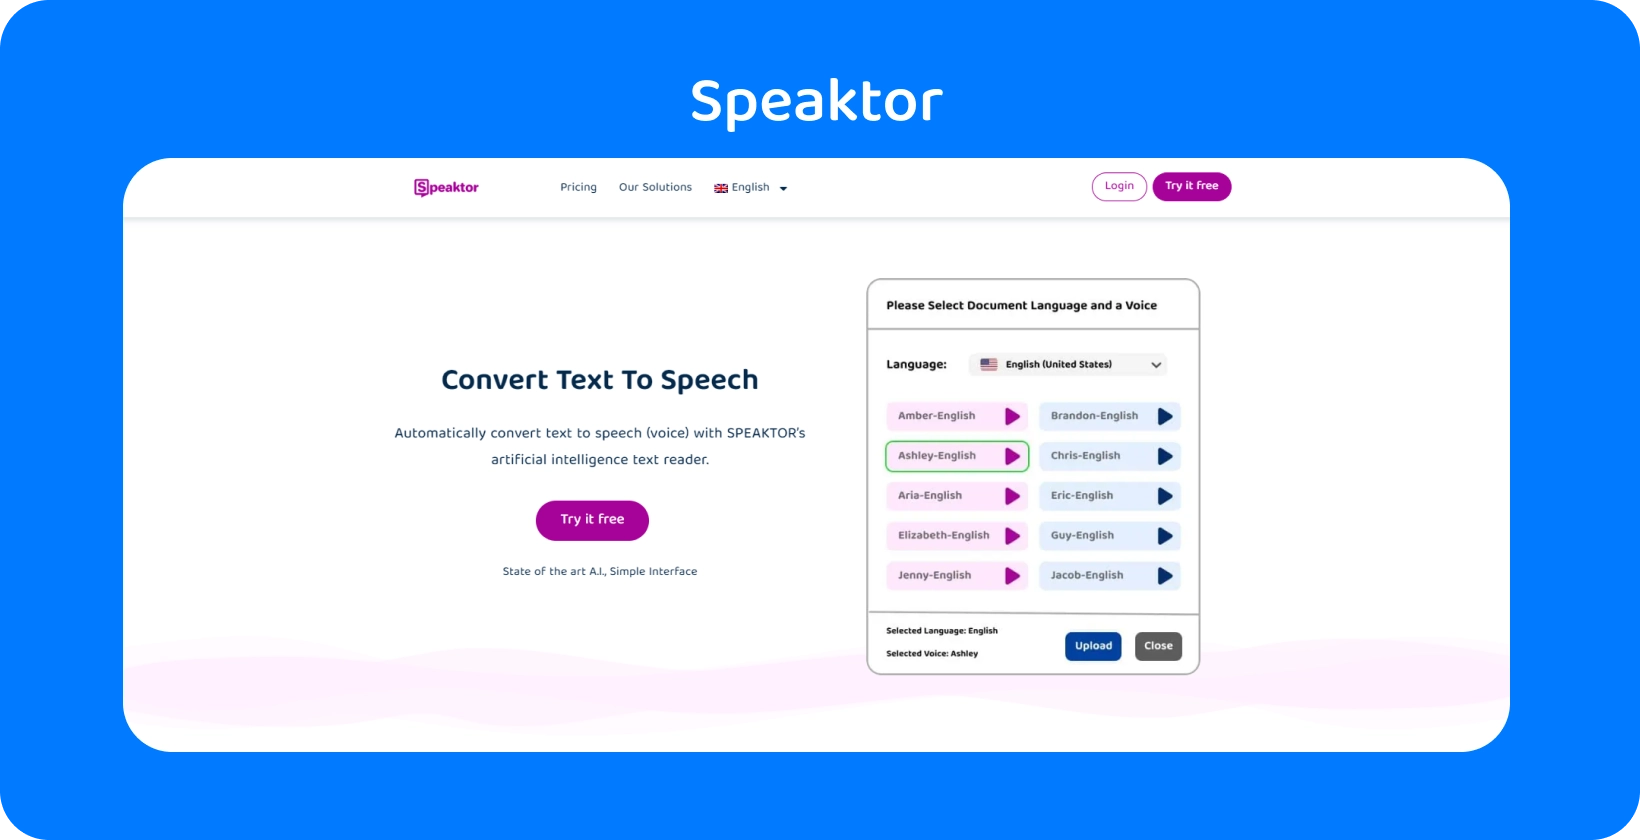 Speaktor bietet eine einfach zu bedienende Oberfläche für die Text-zu-Sprache-Konvertierung.